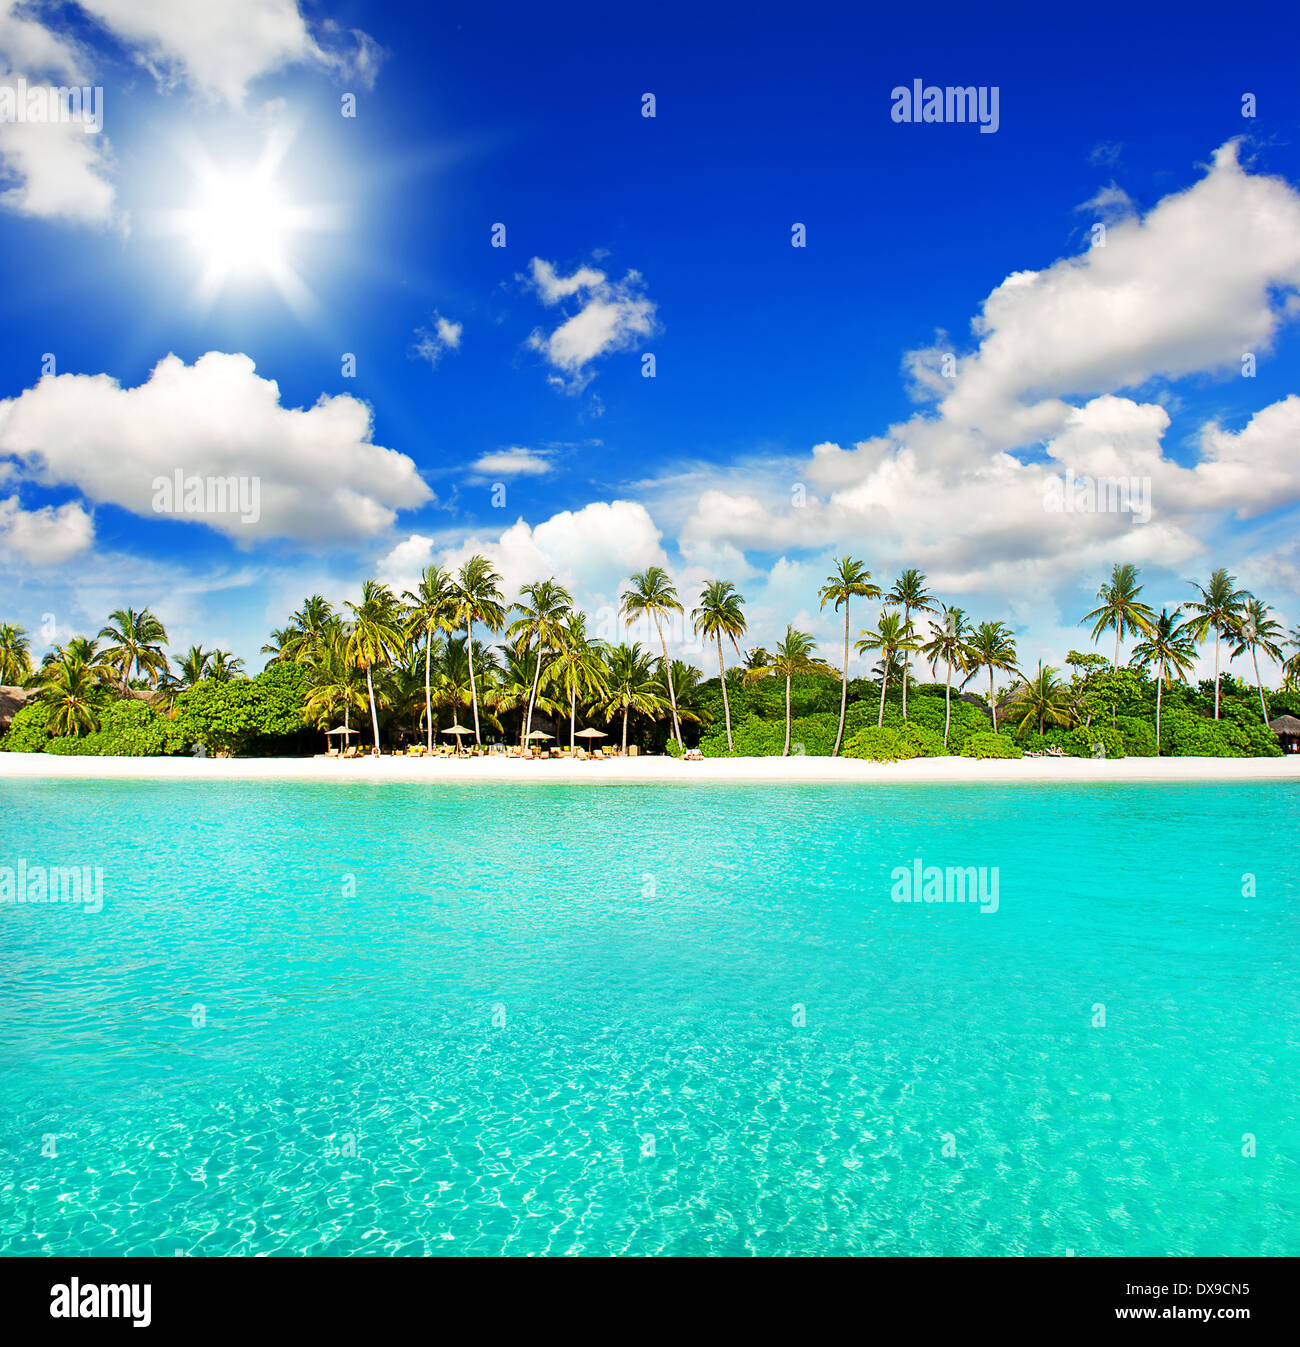 Paysage de la plage de l'île tropicale avec ciel bleu ensoleillé parfait Banque D'Images